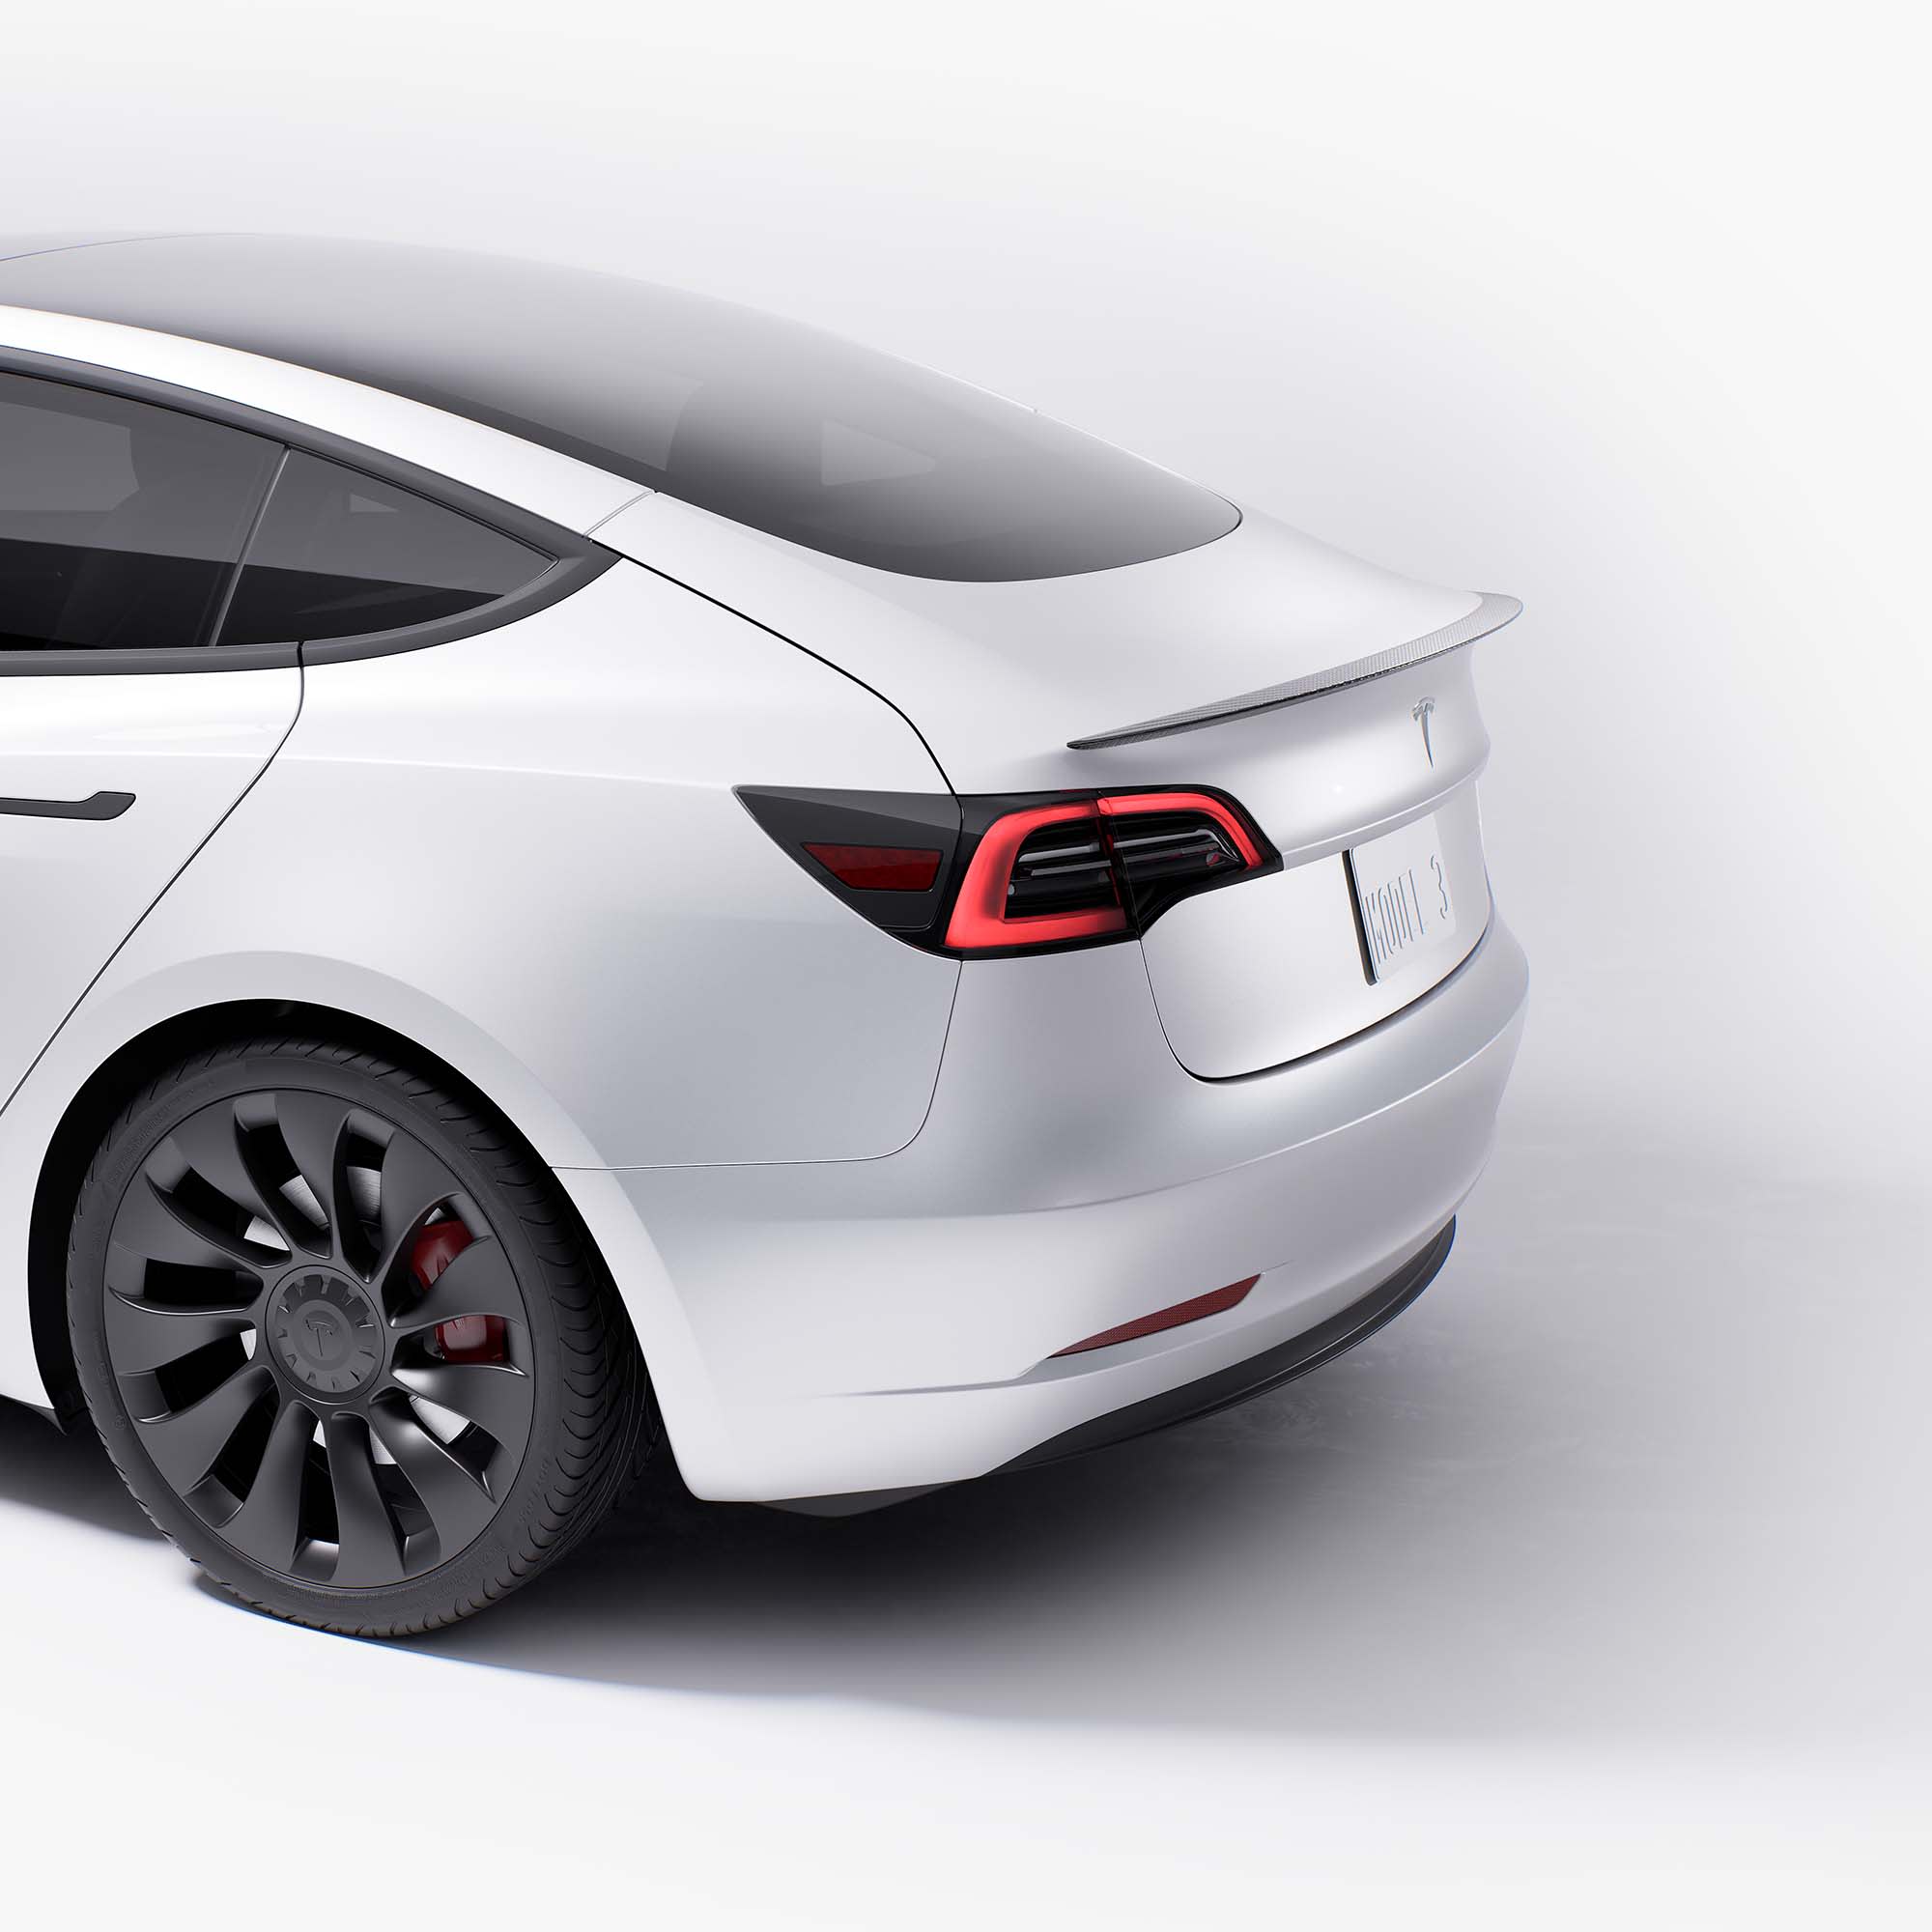 Xipoo Fit Tesla Model 3 Spoiler Trunk Spoiler Wing Rear Spoiler Wing Lip for 2017-2021 Tesla Model 3 Accessories Glossy Carbon Fiber, Model 3 Original Model Spoiler 